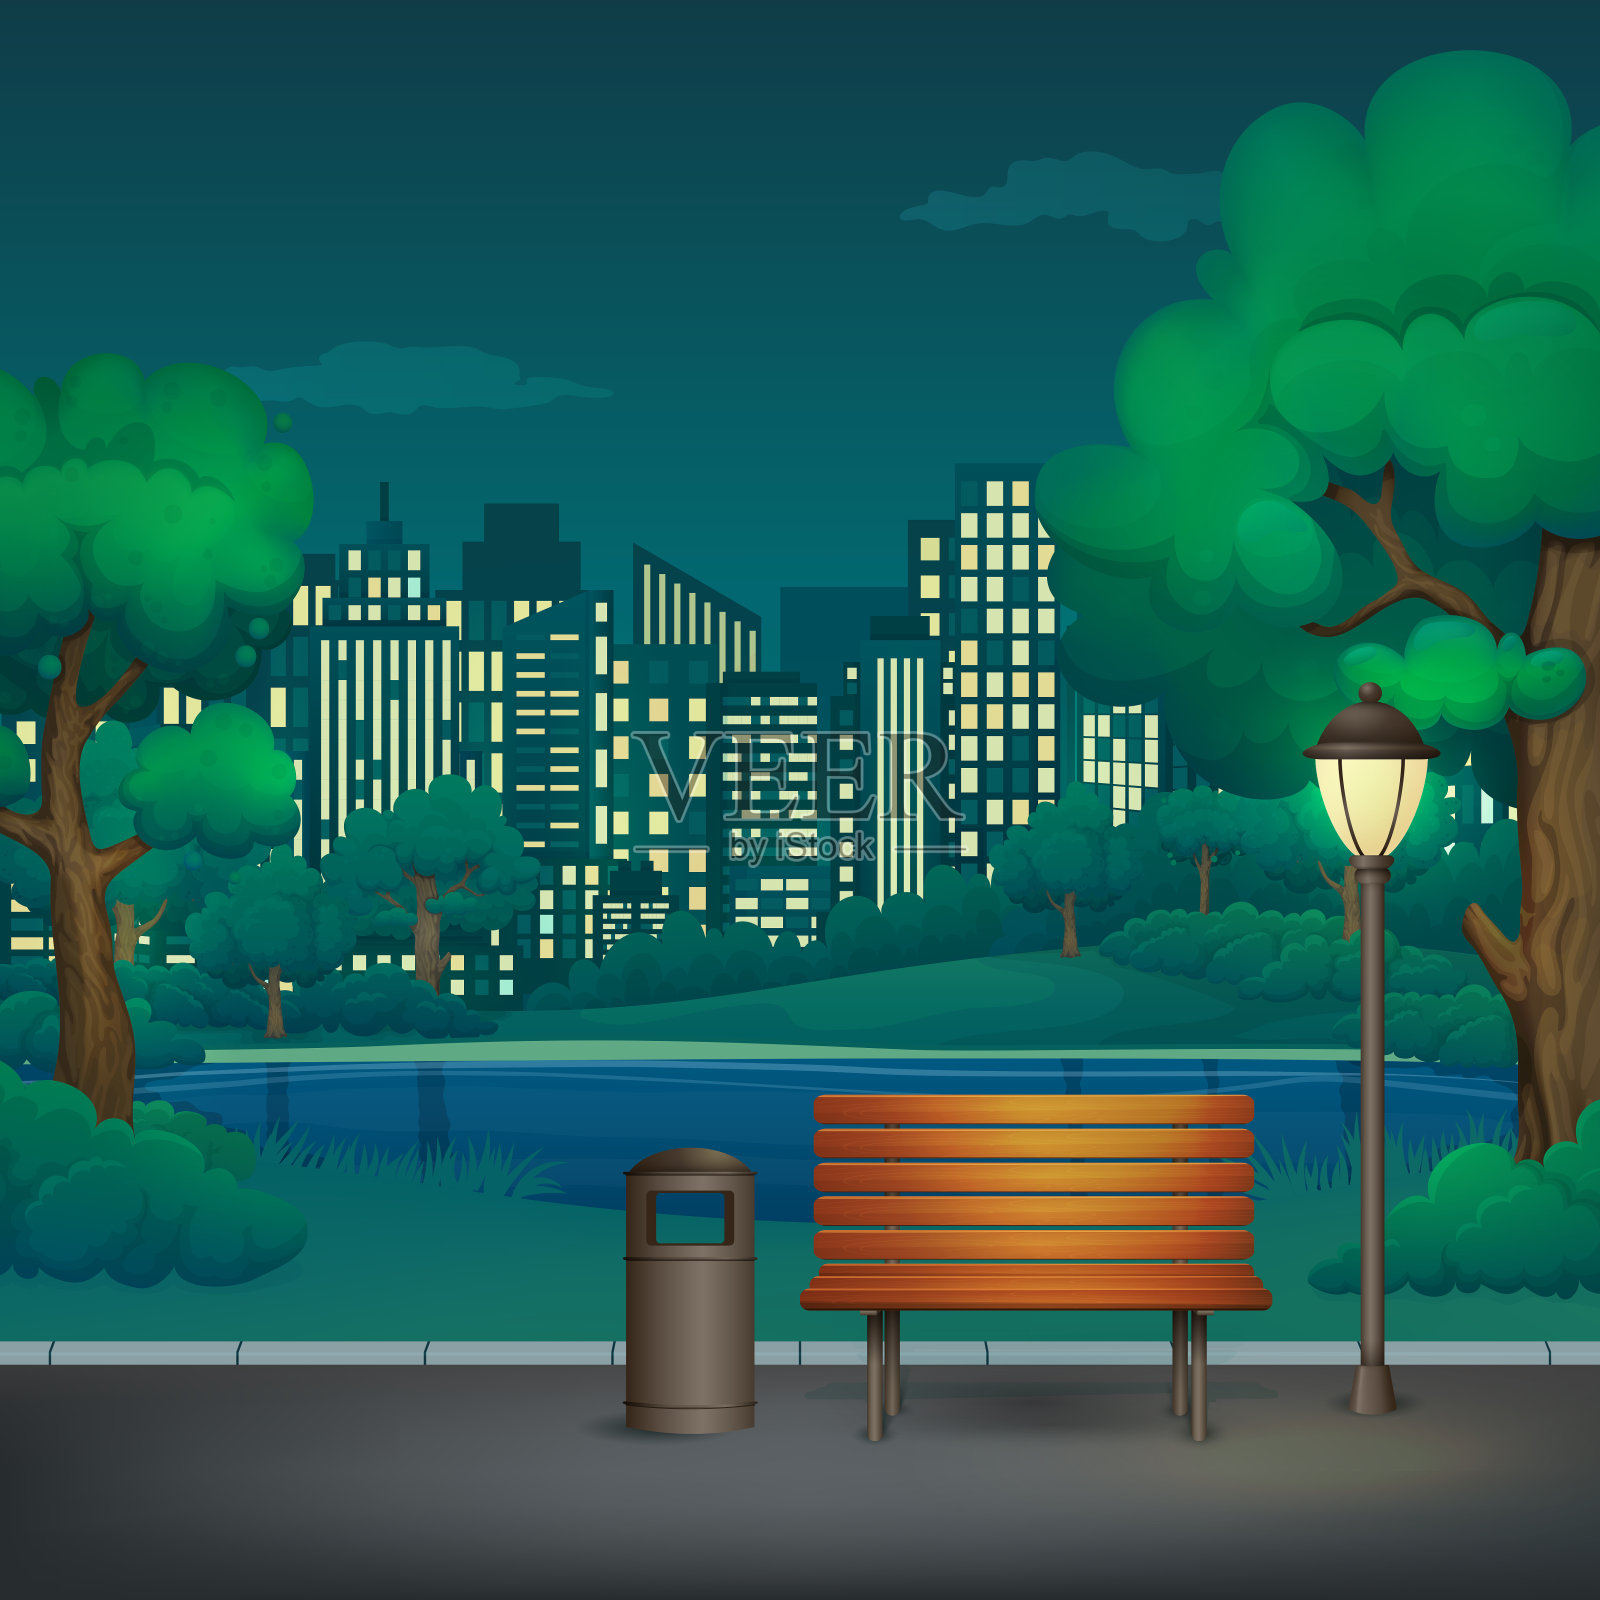 夏、春、夜园矢量插画。木凳、垃圾桶和路灯在柏油公园小径上，郁郁葱葱的树木、灌木丛、湖泊和摩天大楼的城市景观。插画图片素材